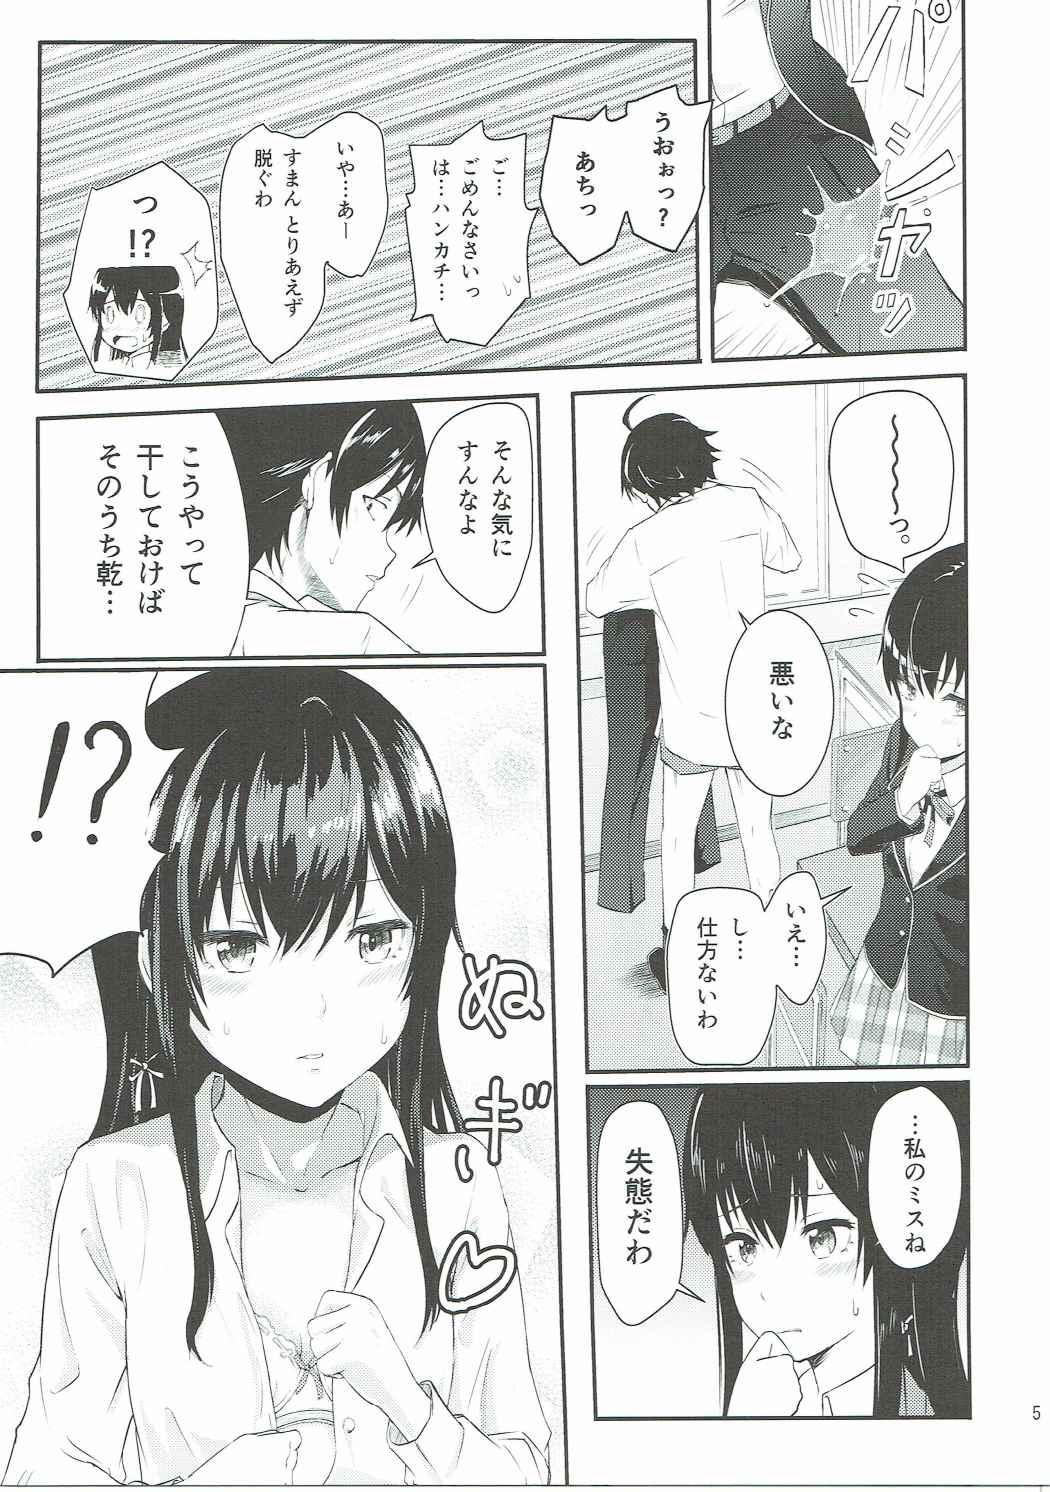 Spying Yukino - Yahari ore no seishun love come wa machigatteiru Stepsiblings - Page 4